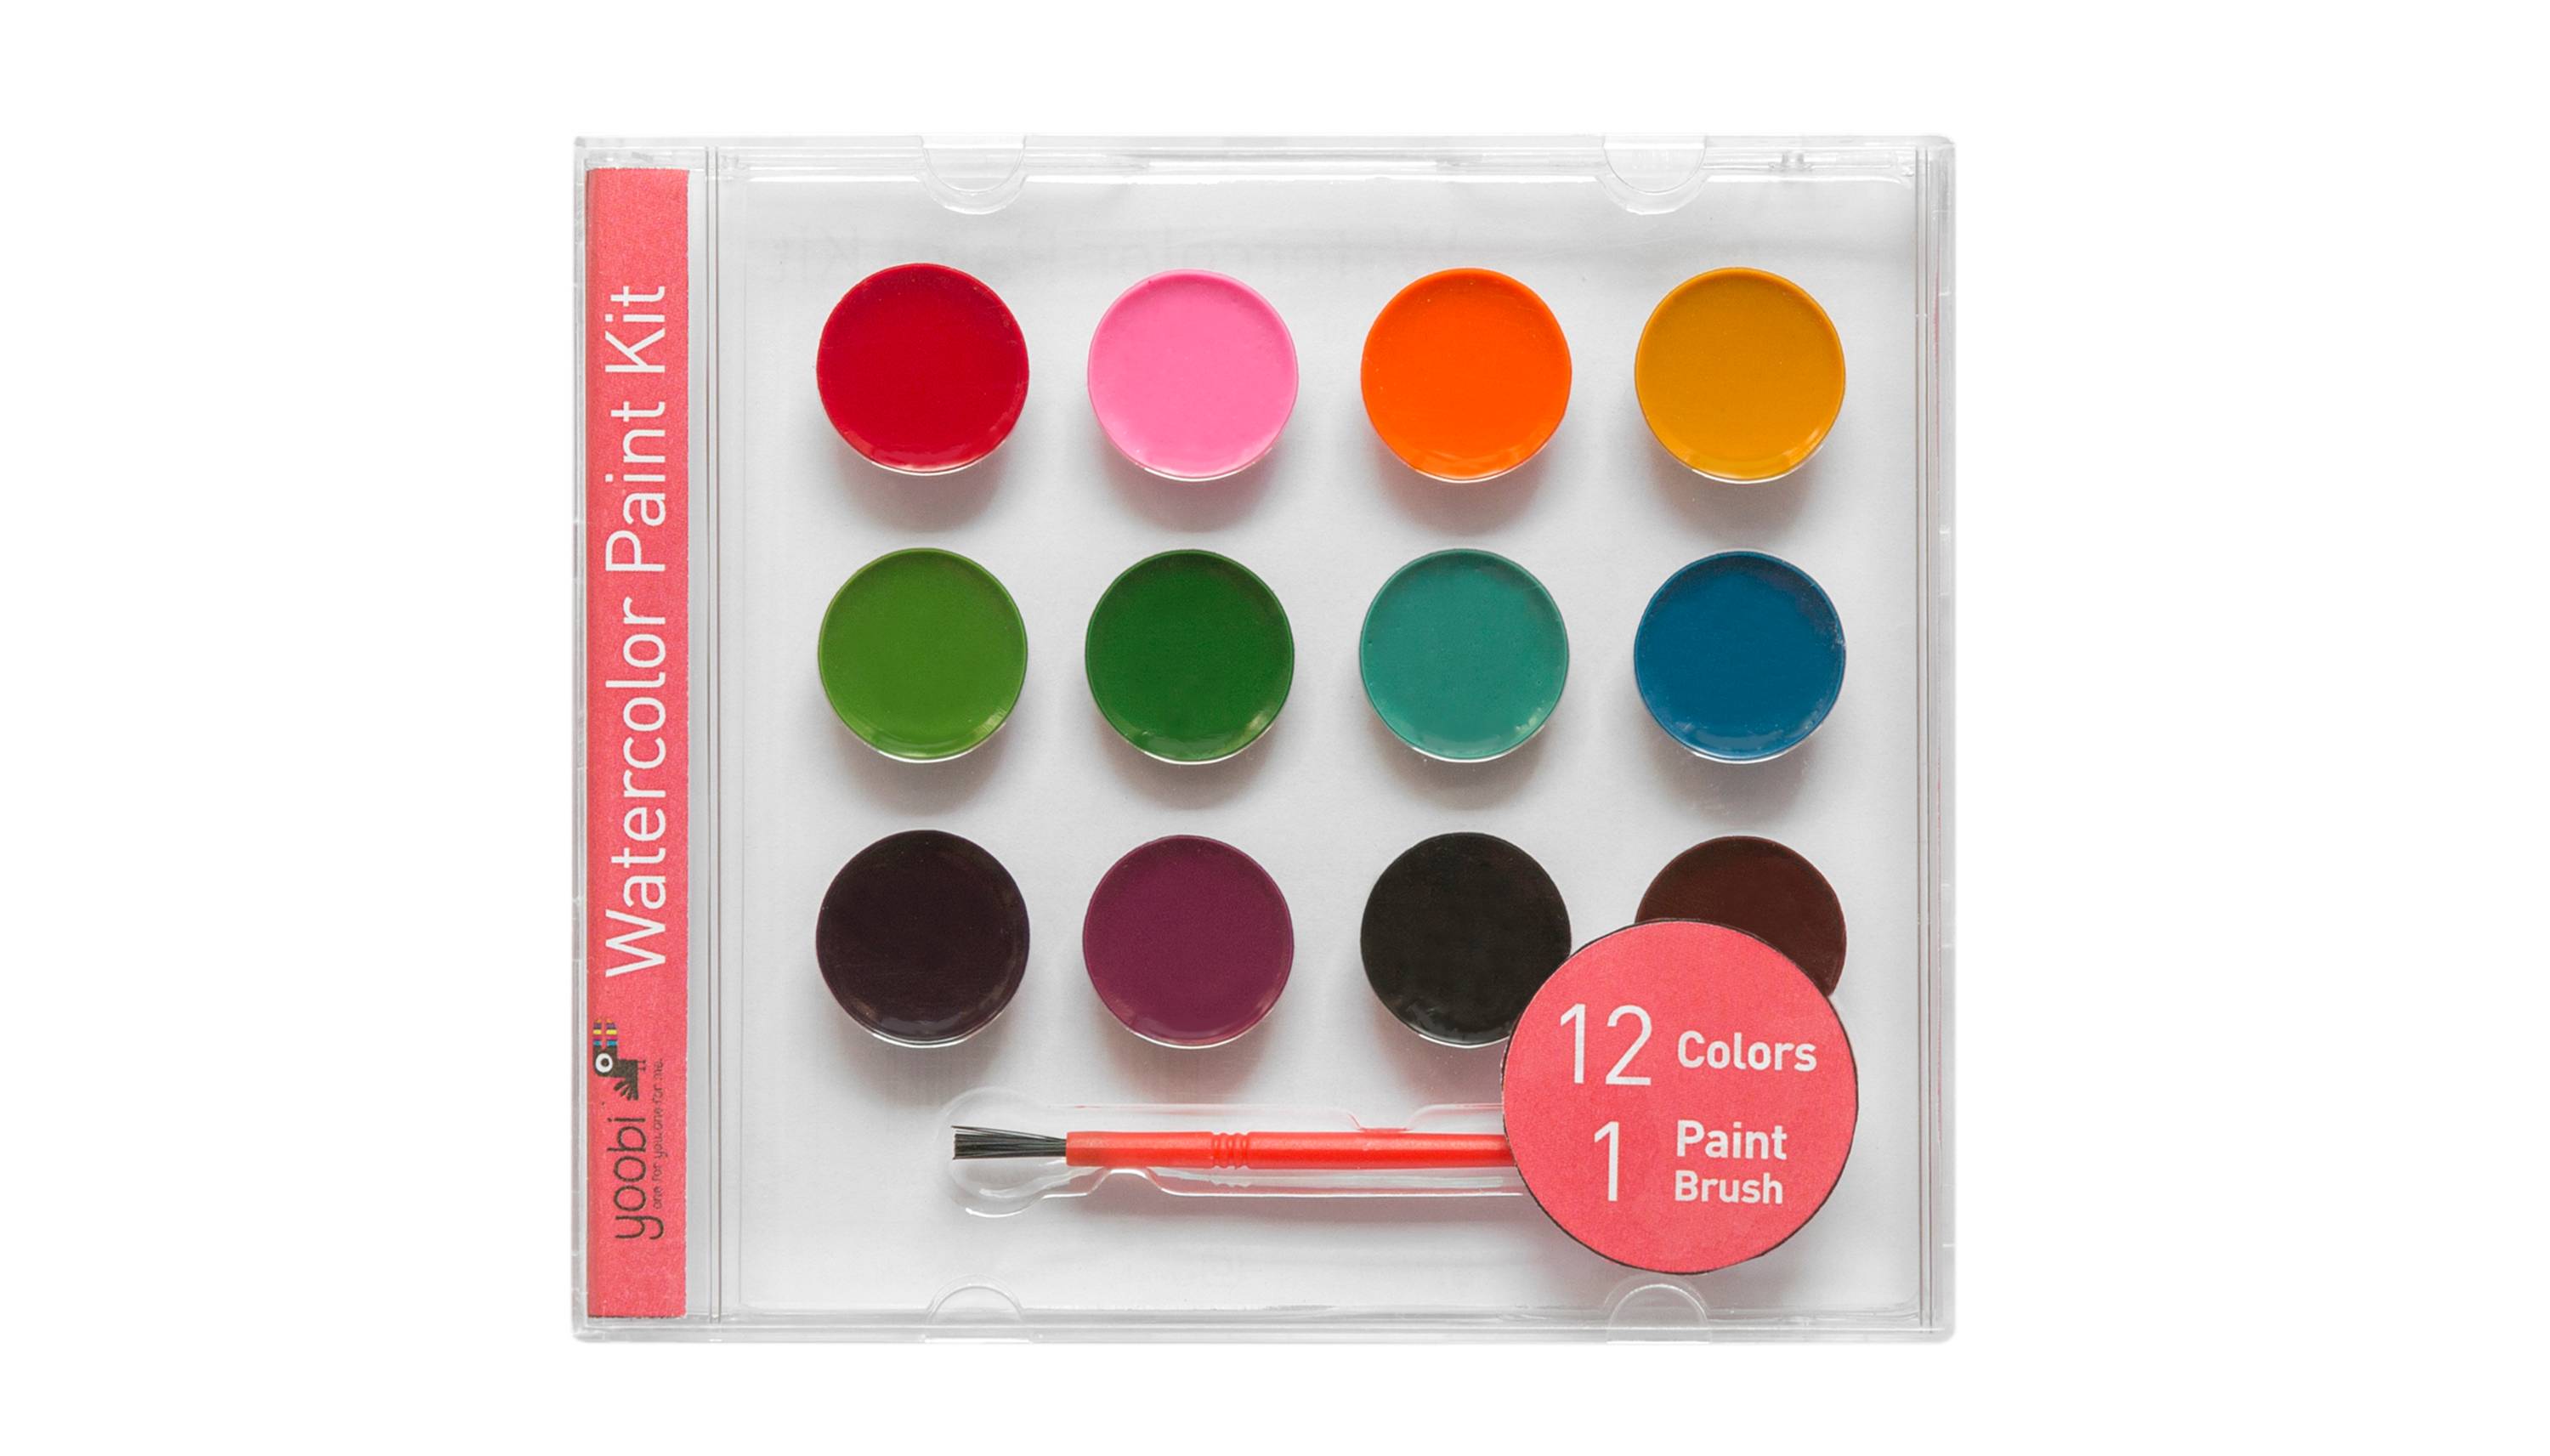 Yoobi™ Watercolor Paint Set, 12 colors, $3.99 @target.com